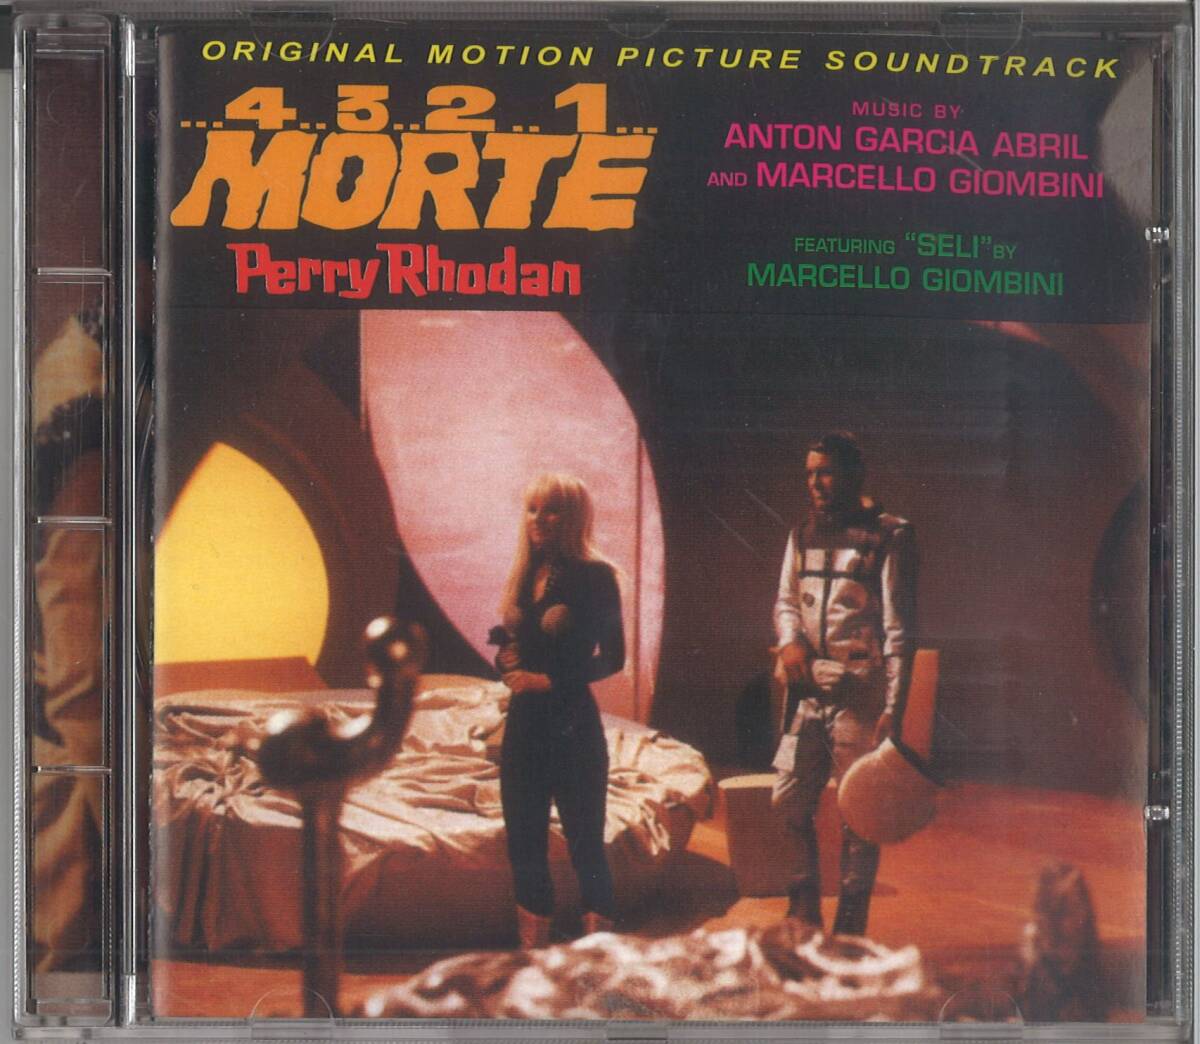 CD「4.3.2.1 MORTE 宇宙英雄ペリー・ローダン」オリジナルサウンドトラックの画像1